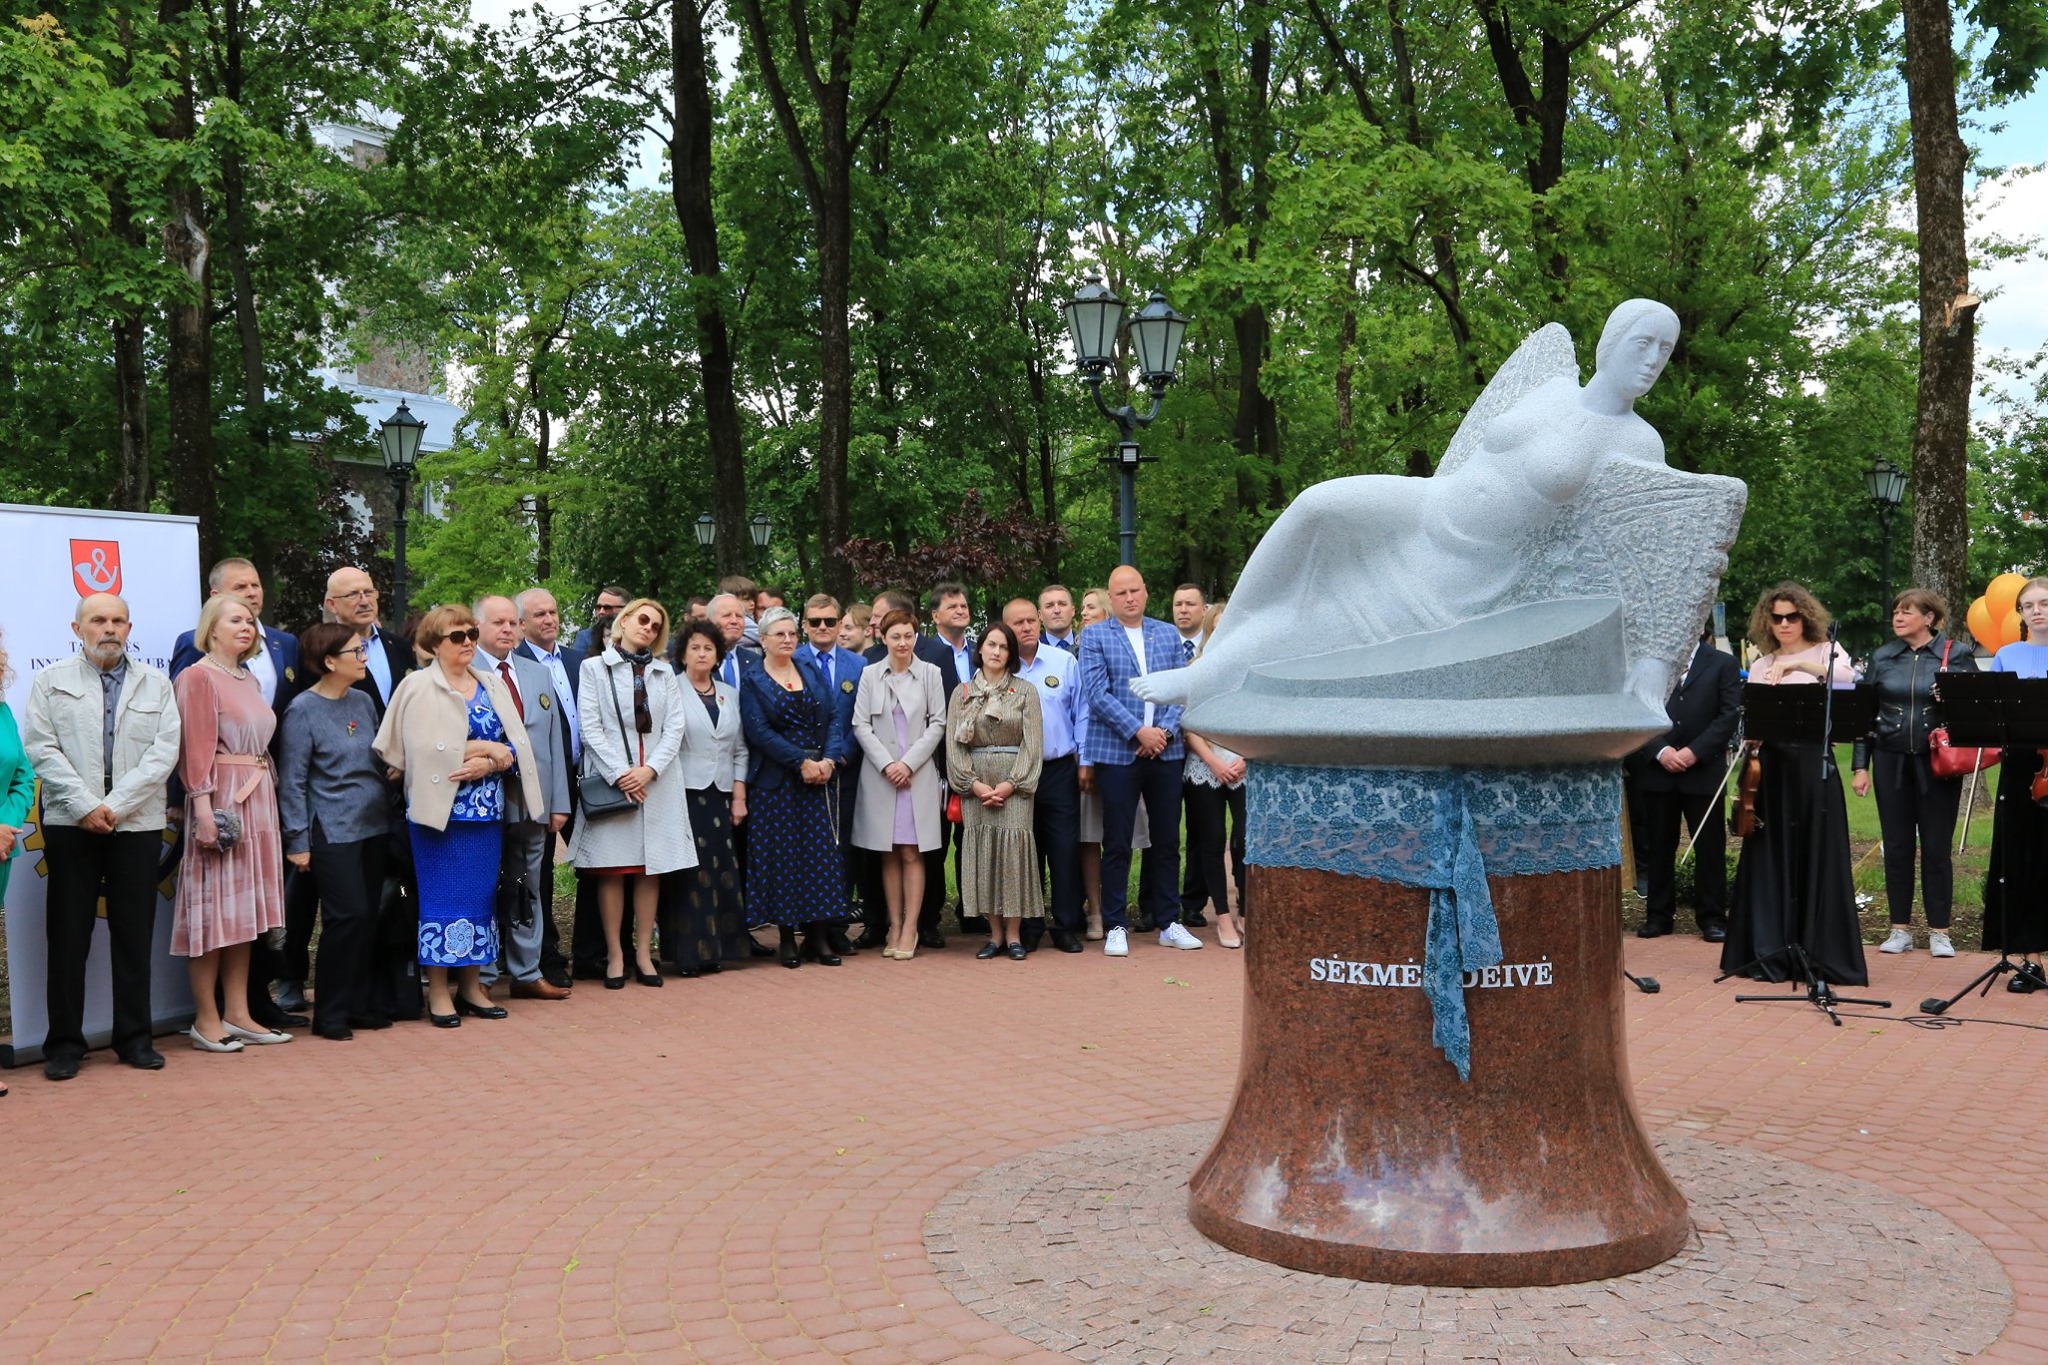 2020-06-07 Tauragės J. V. Kalvano parką papuošė skulptūra „Sėkmės deivė“